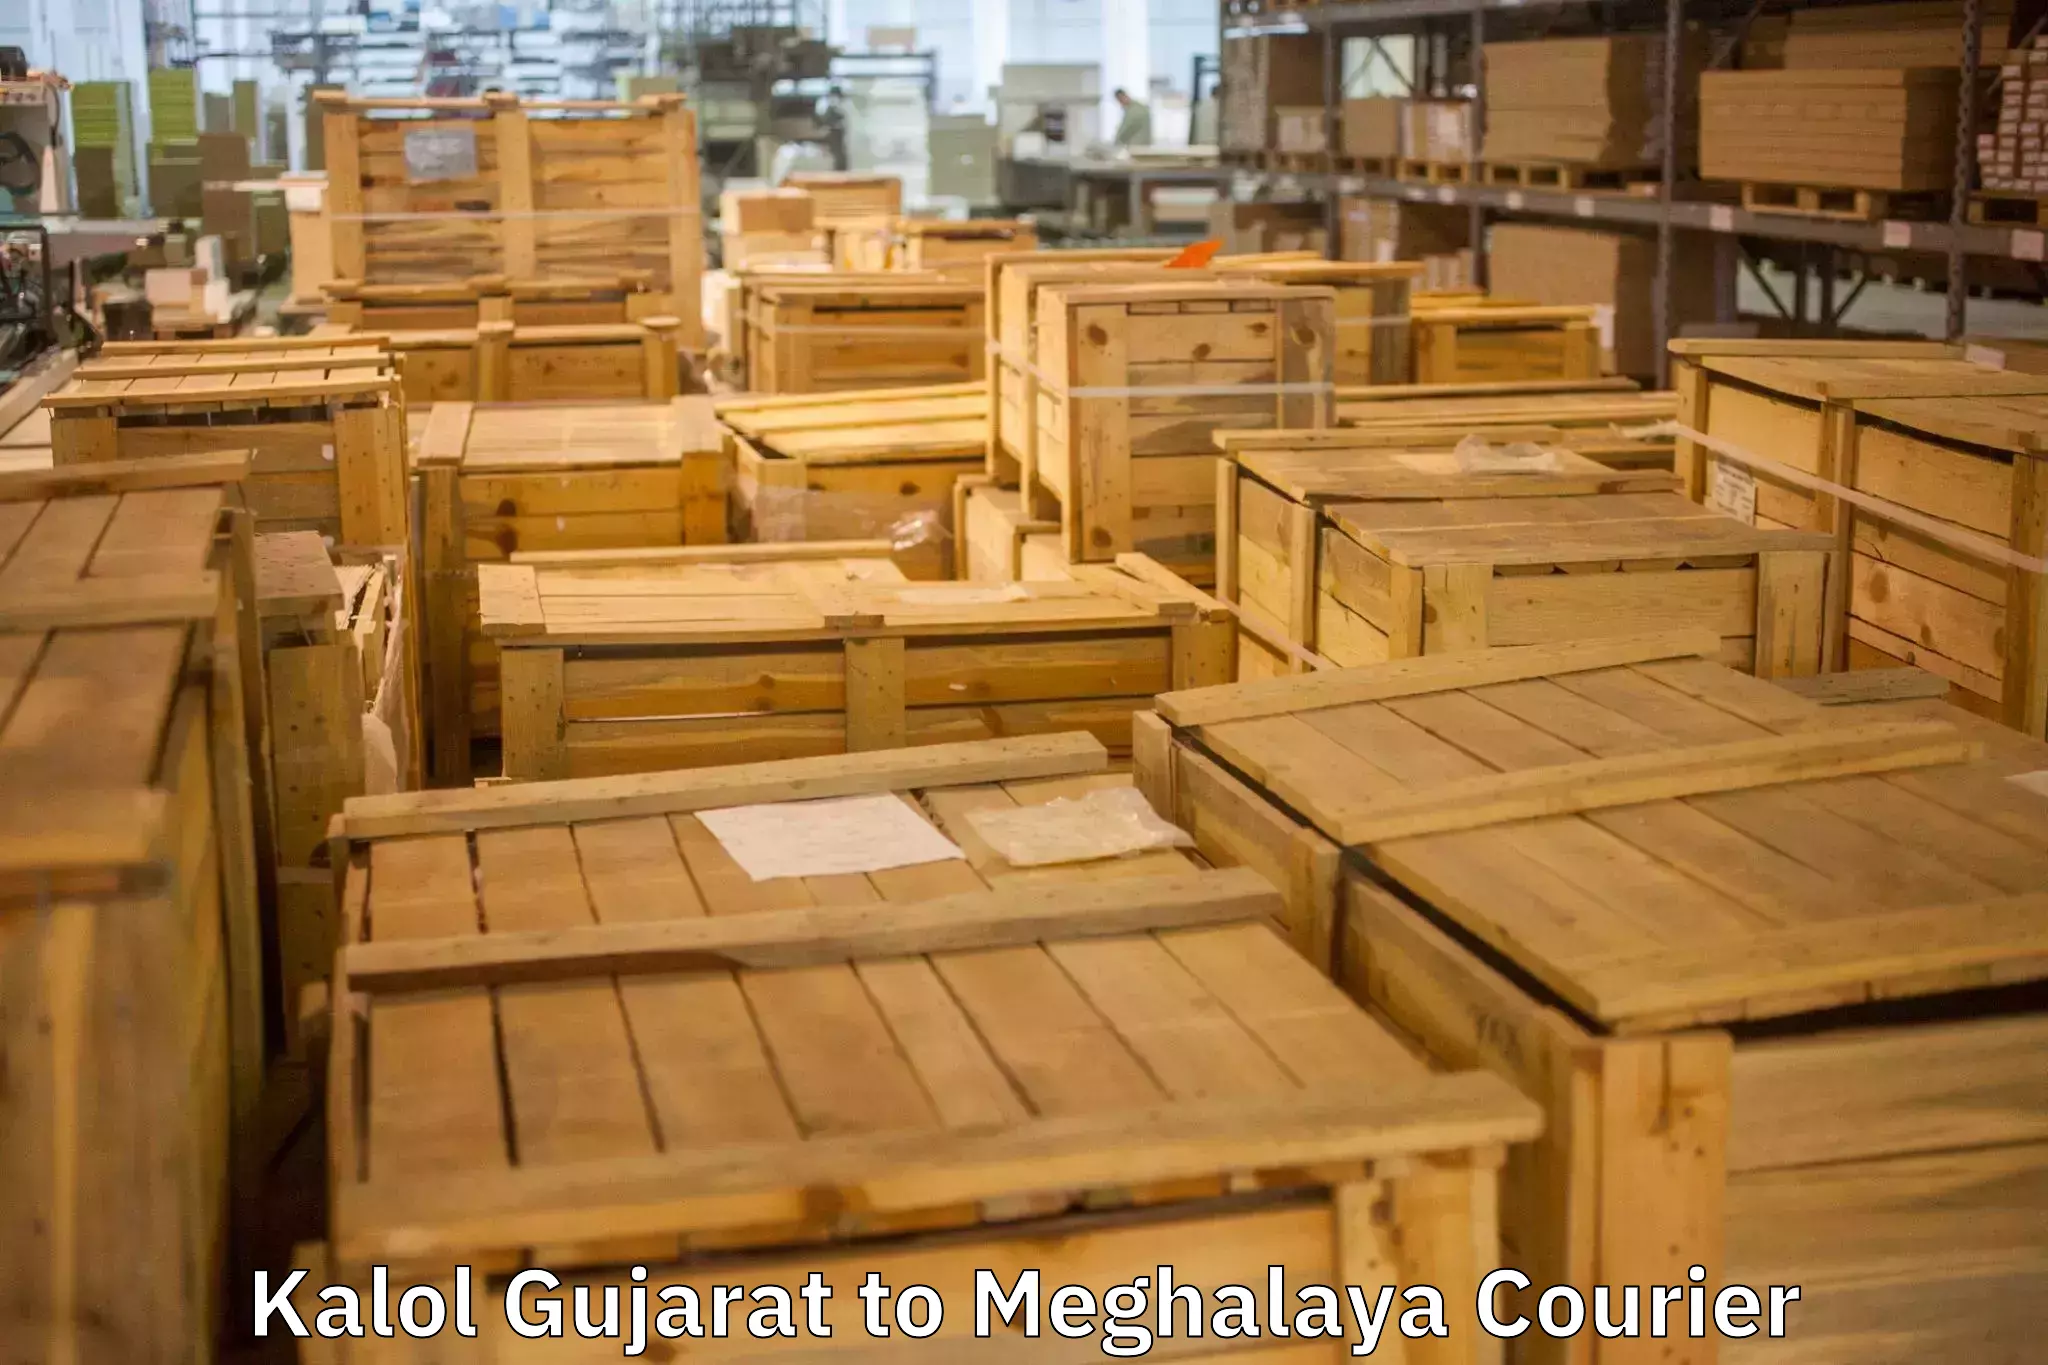 Furniture transport and storage Kalol Gujarat to Shillong